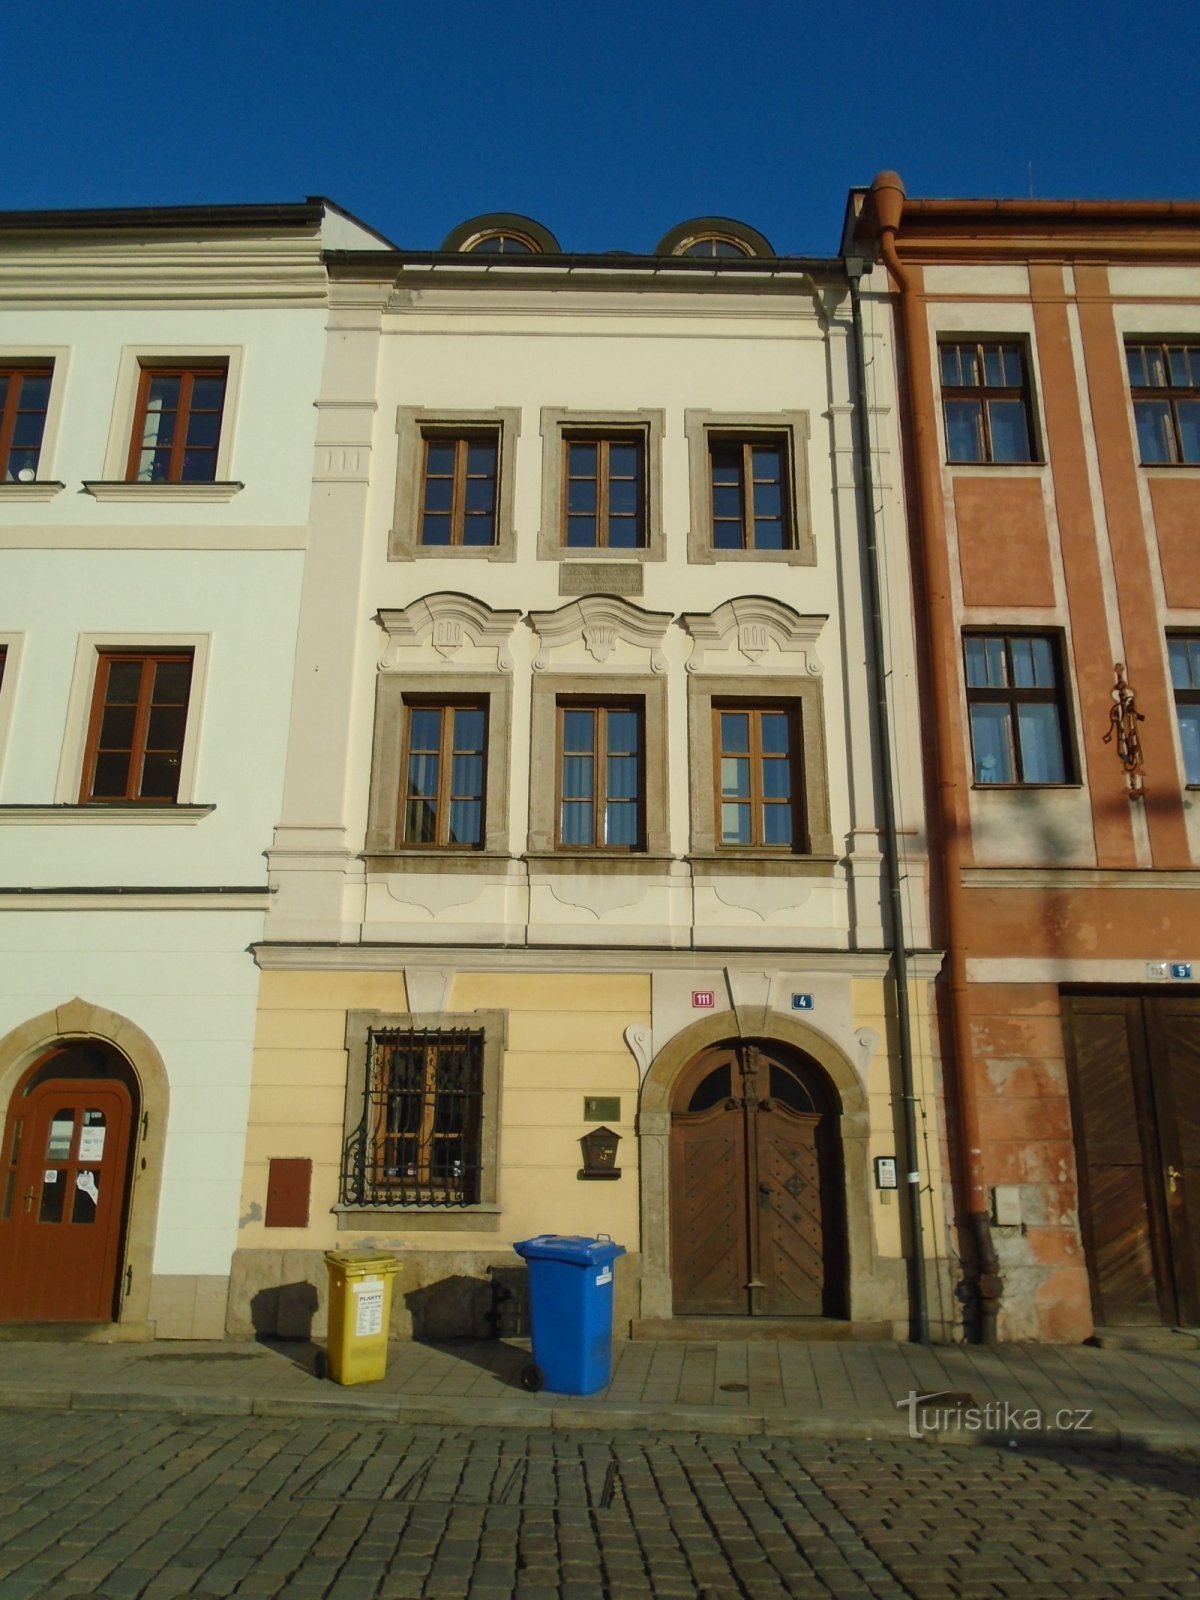 Malé náměstí nr. 111 (Hradec Králové, 30.1.2019. april XNUMX)